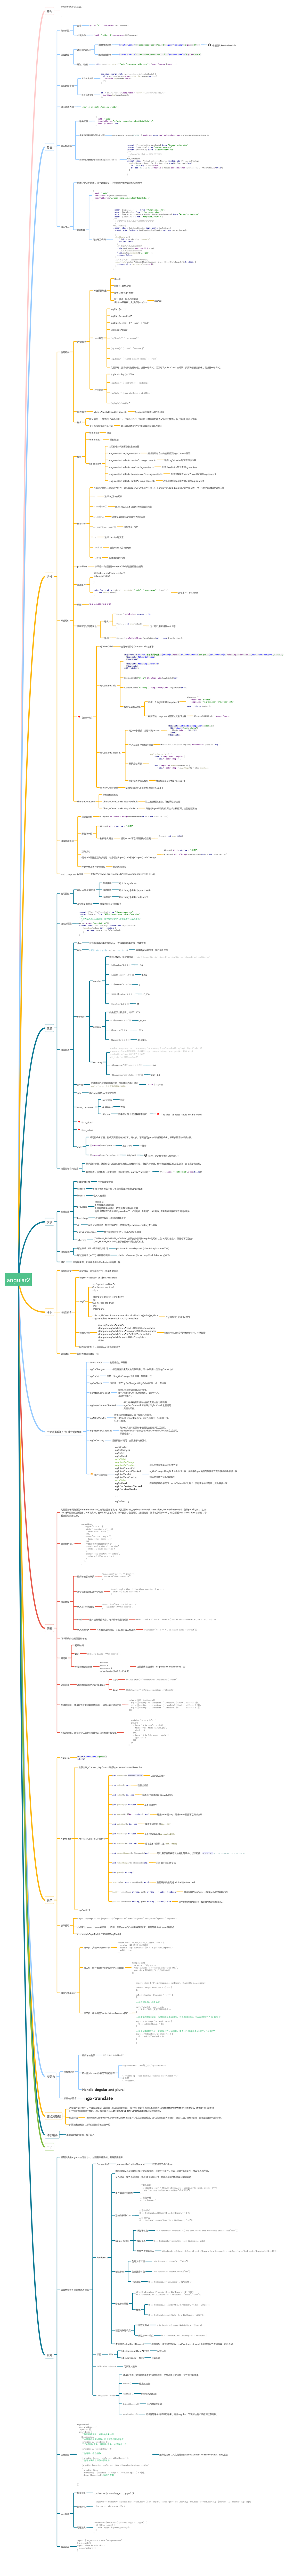 Angular2.0知识架构图